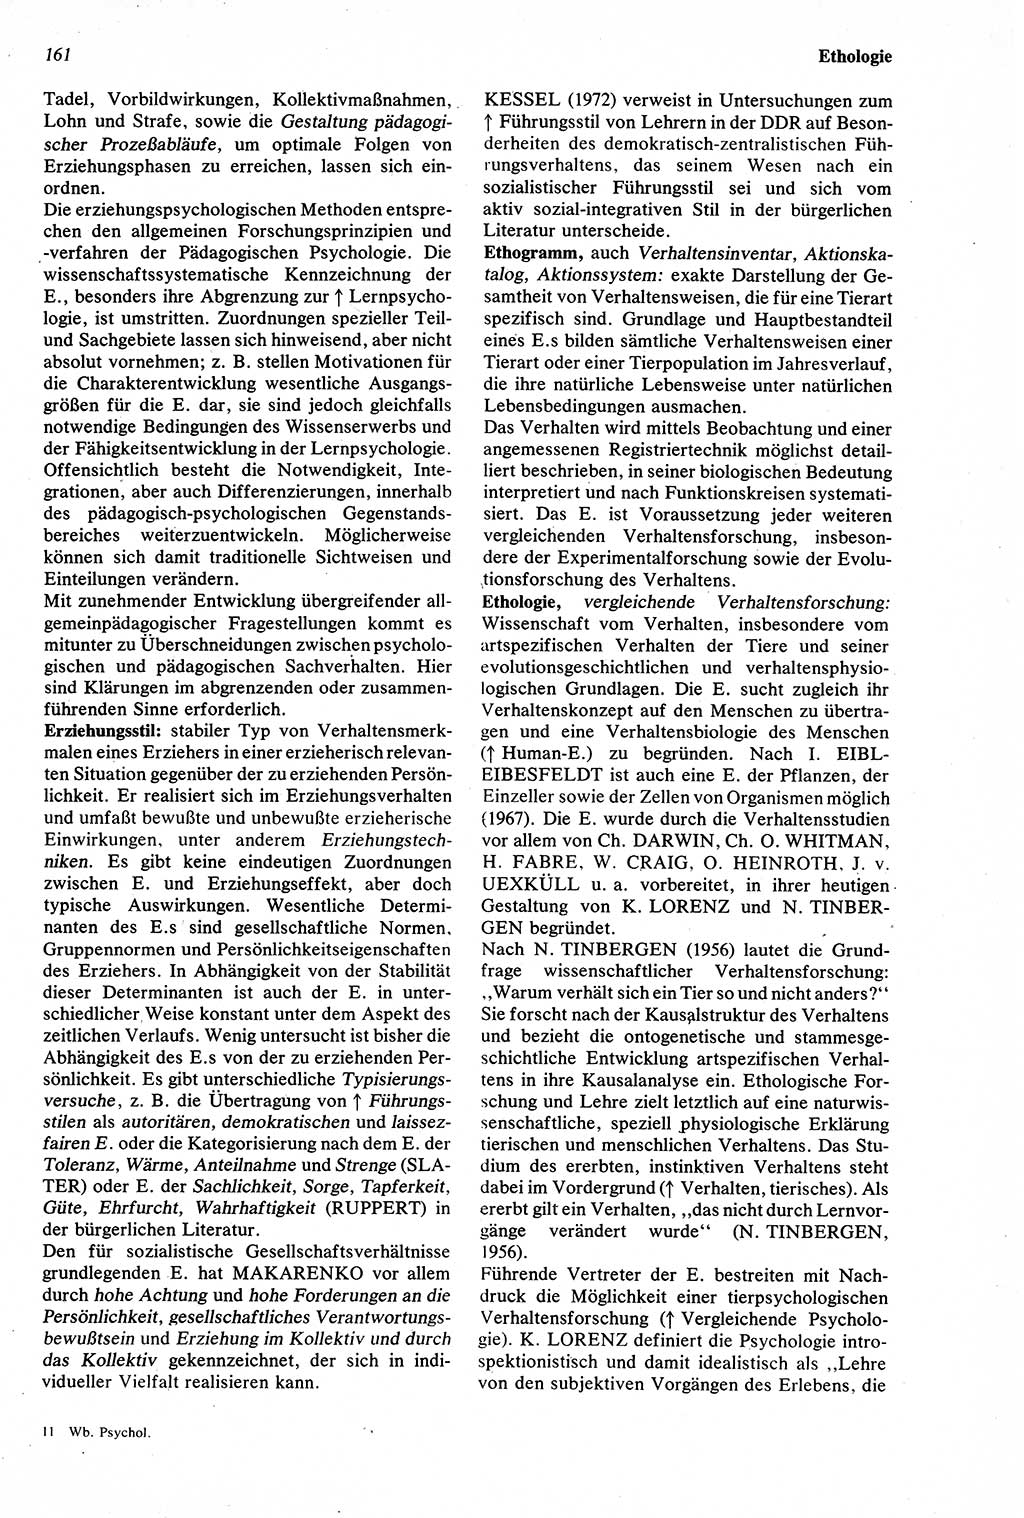 Wörterbuch der Psychologie [Deutsche Demokratische Republik (DDR)] 1976, Seite 161 (Wb. Psych. DDR 1976, S. 161)